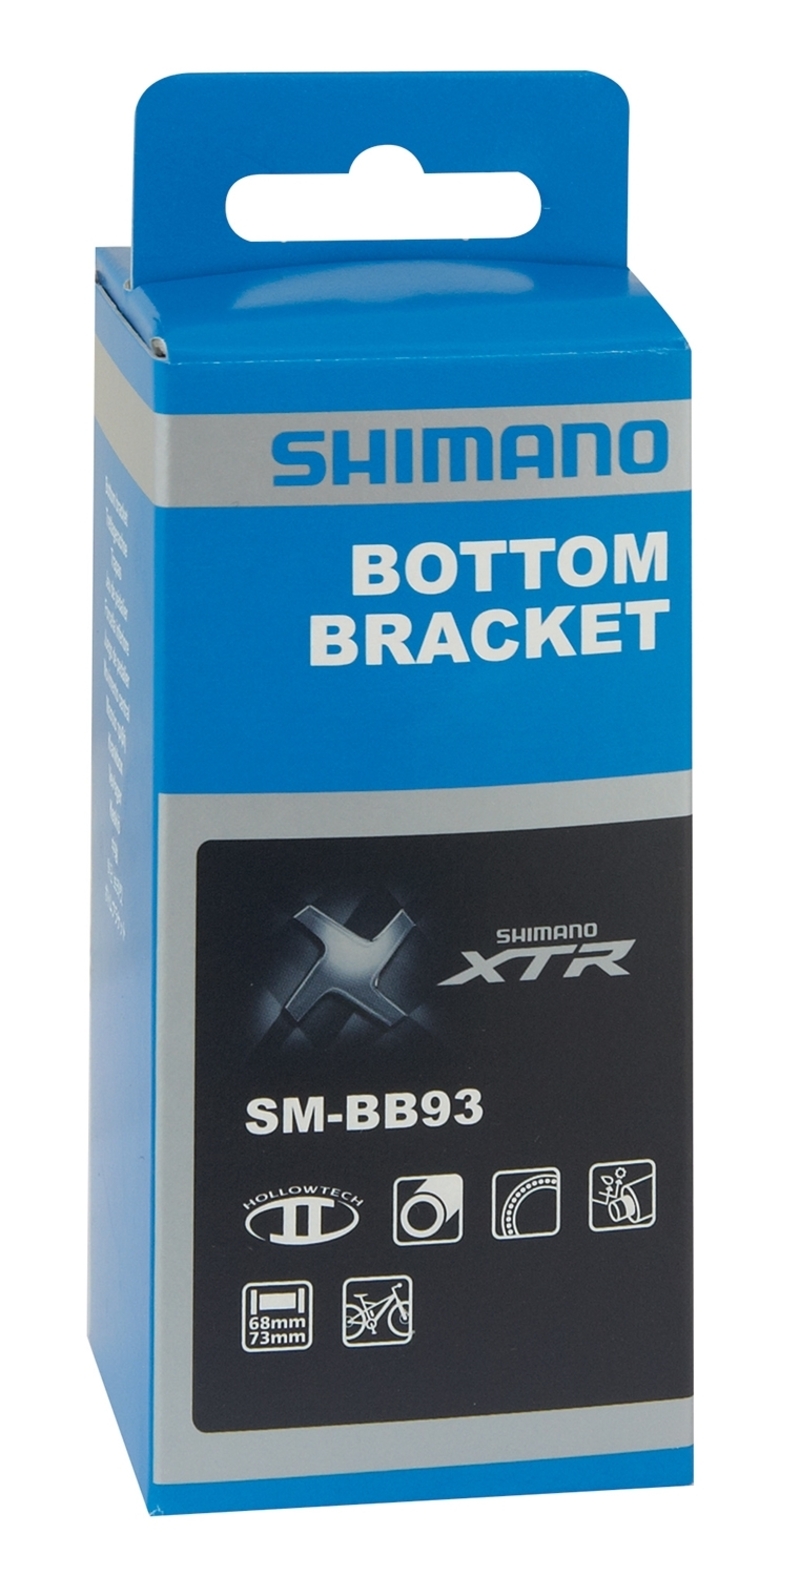 Shimano středové složení XTR SM-BB93